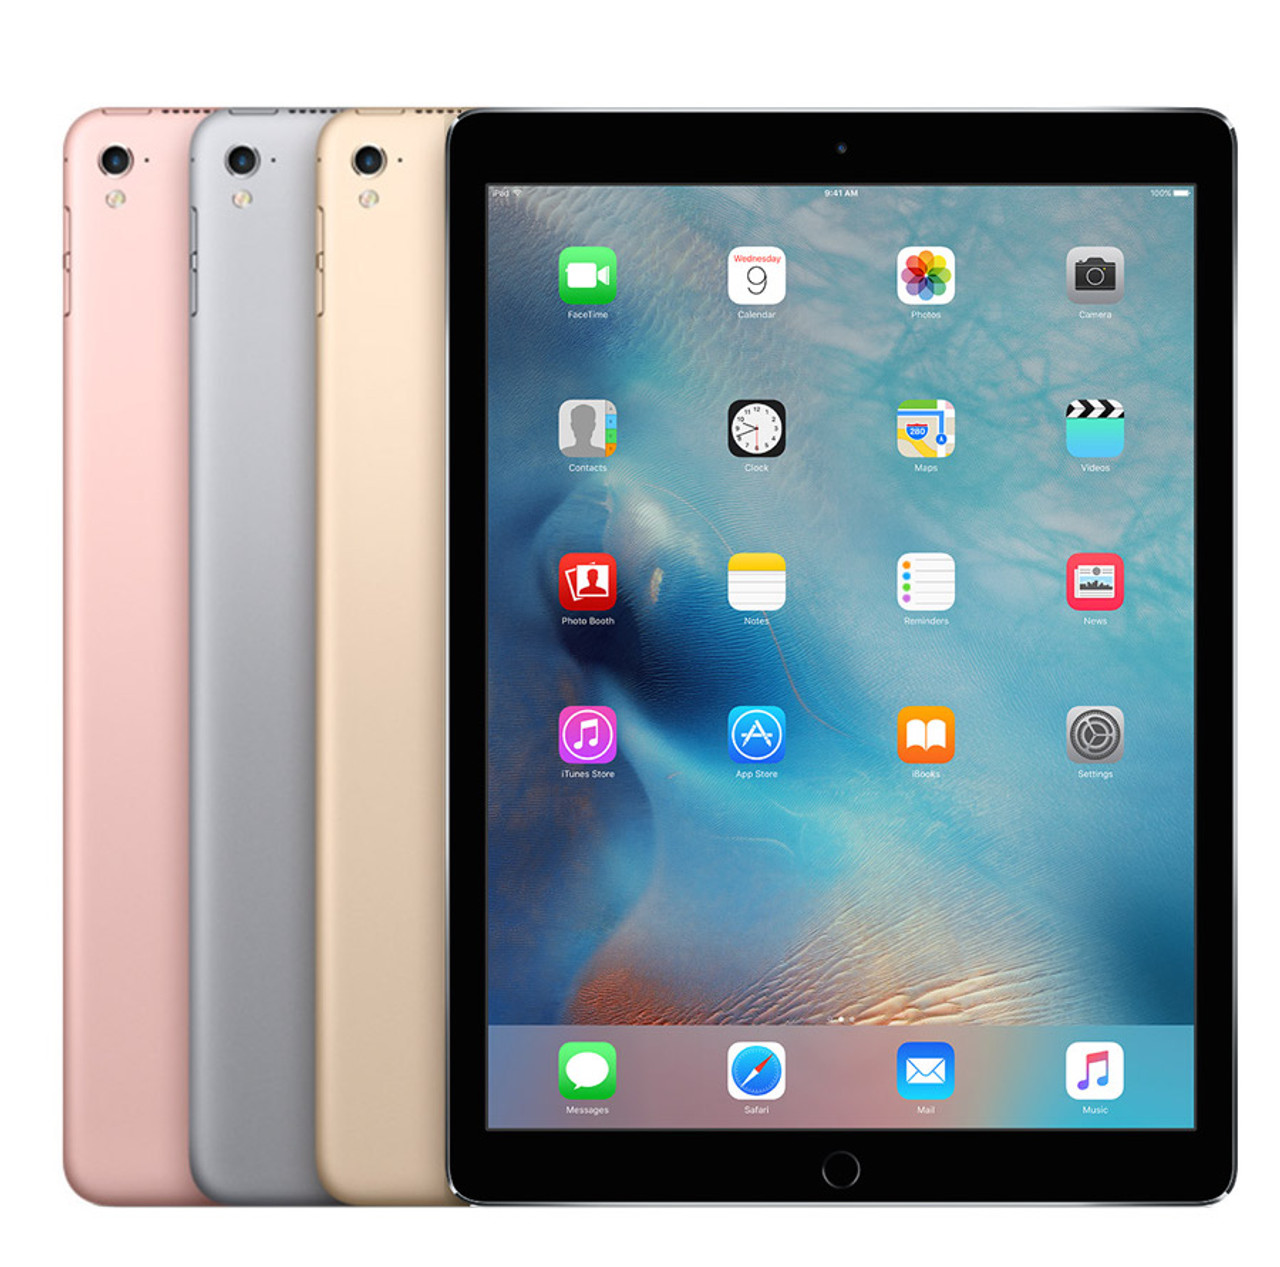 Apple iPad Pro 9.7-inch (32GB) Wi-Fi - Mac Me an Offer